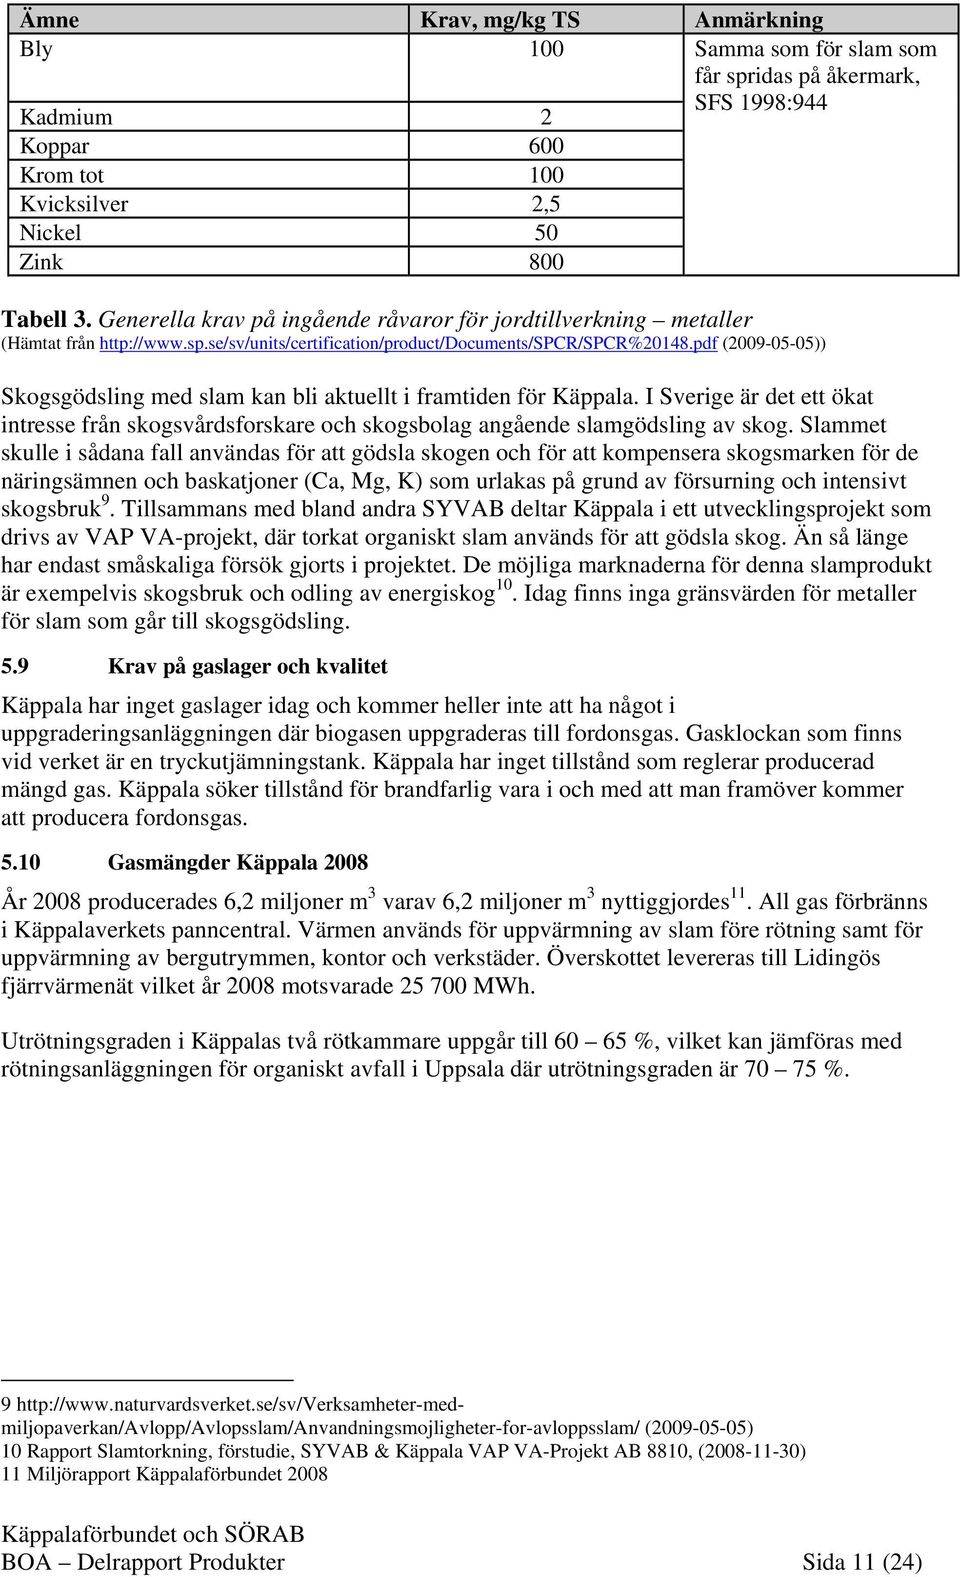 pdf (2009-05-05)) Skogsgödsling med slam kan bli aktuellt i framtiden för Käppala. I Sverige är det ett ökat intresse från skogsvårdsforskare och skogsbolag angående slamgödsling av skog.